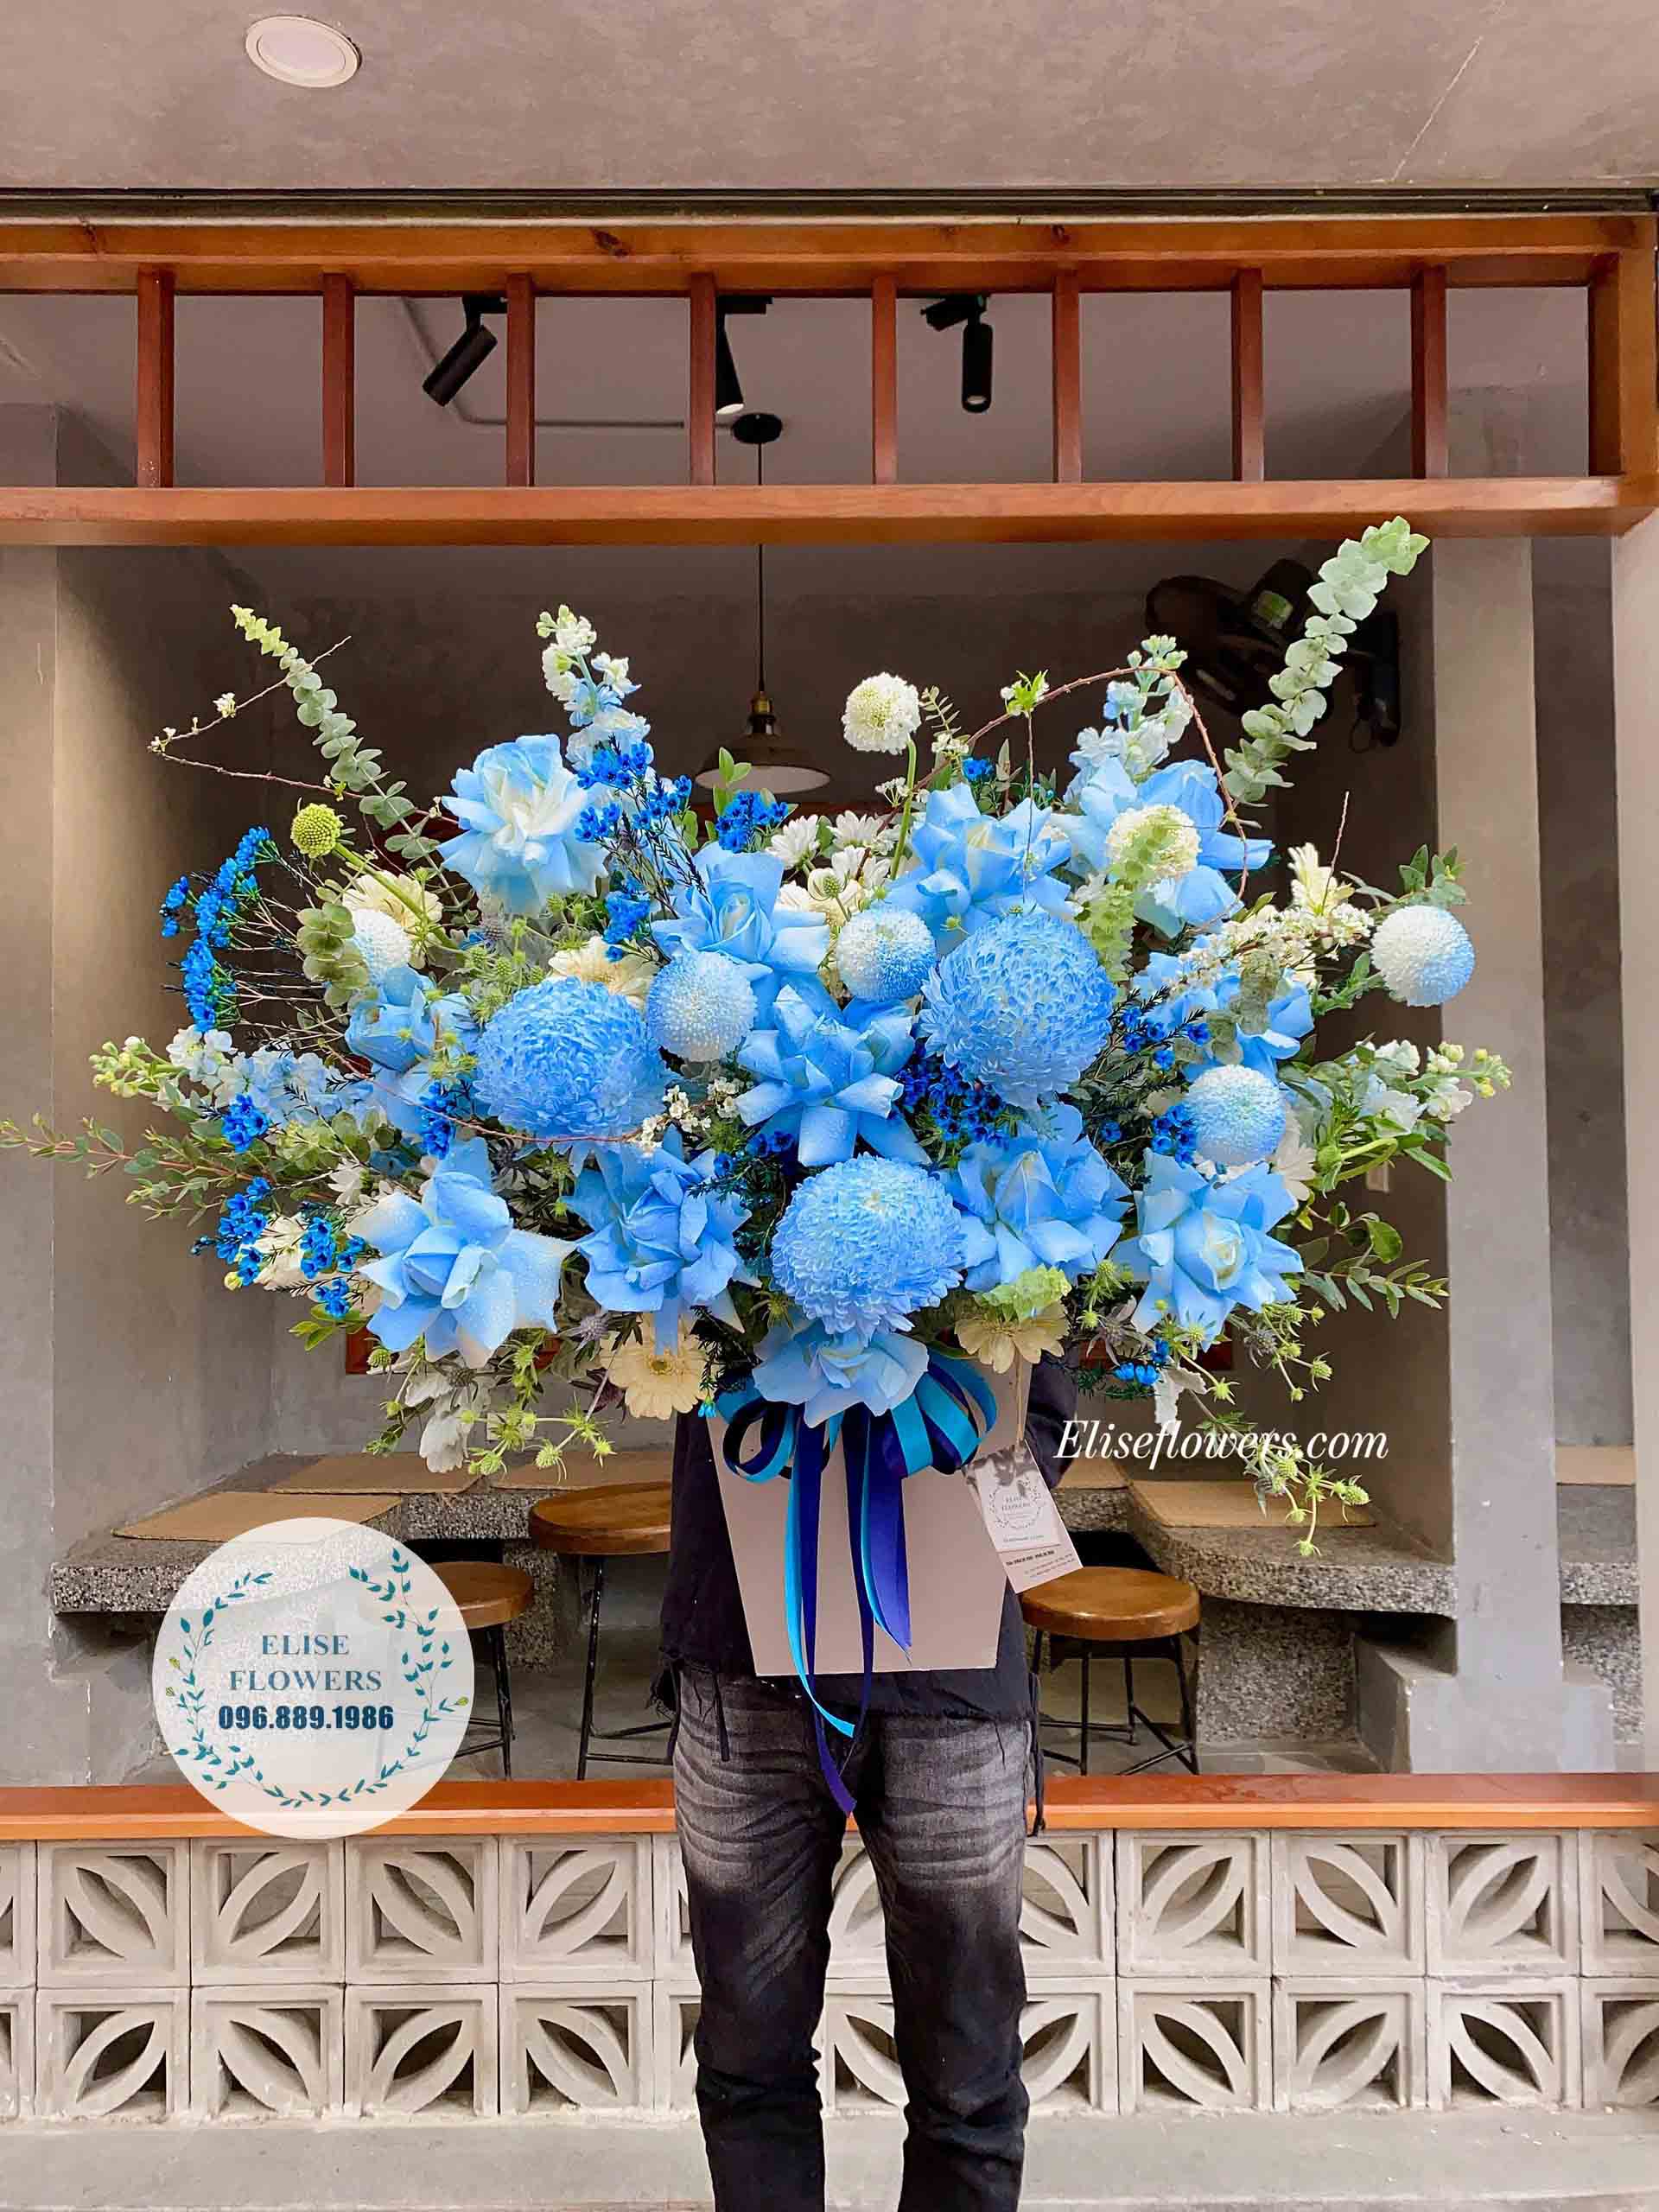 Lẵng hoa màu xanh dương cao cấp mang phong cách hiện đại, lịch sự | Lẵng hoa chúc mừng sinh nhật công ty |  Điện hoa chúc mừng đẹp ở Hà Nội